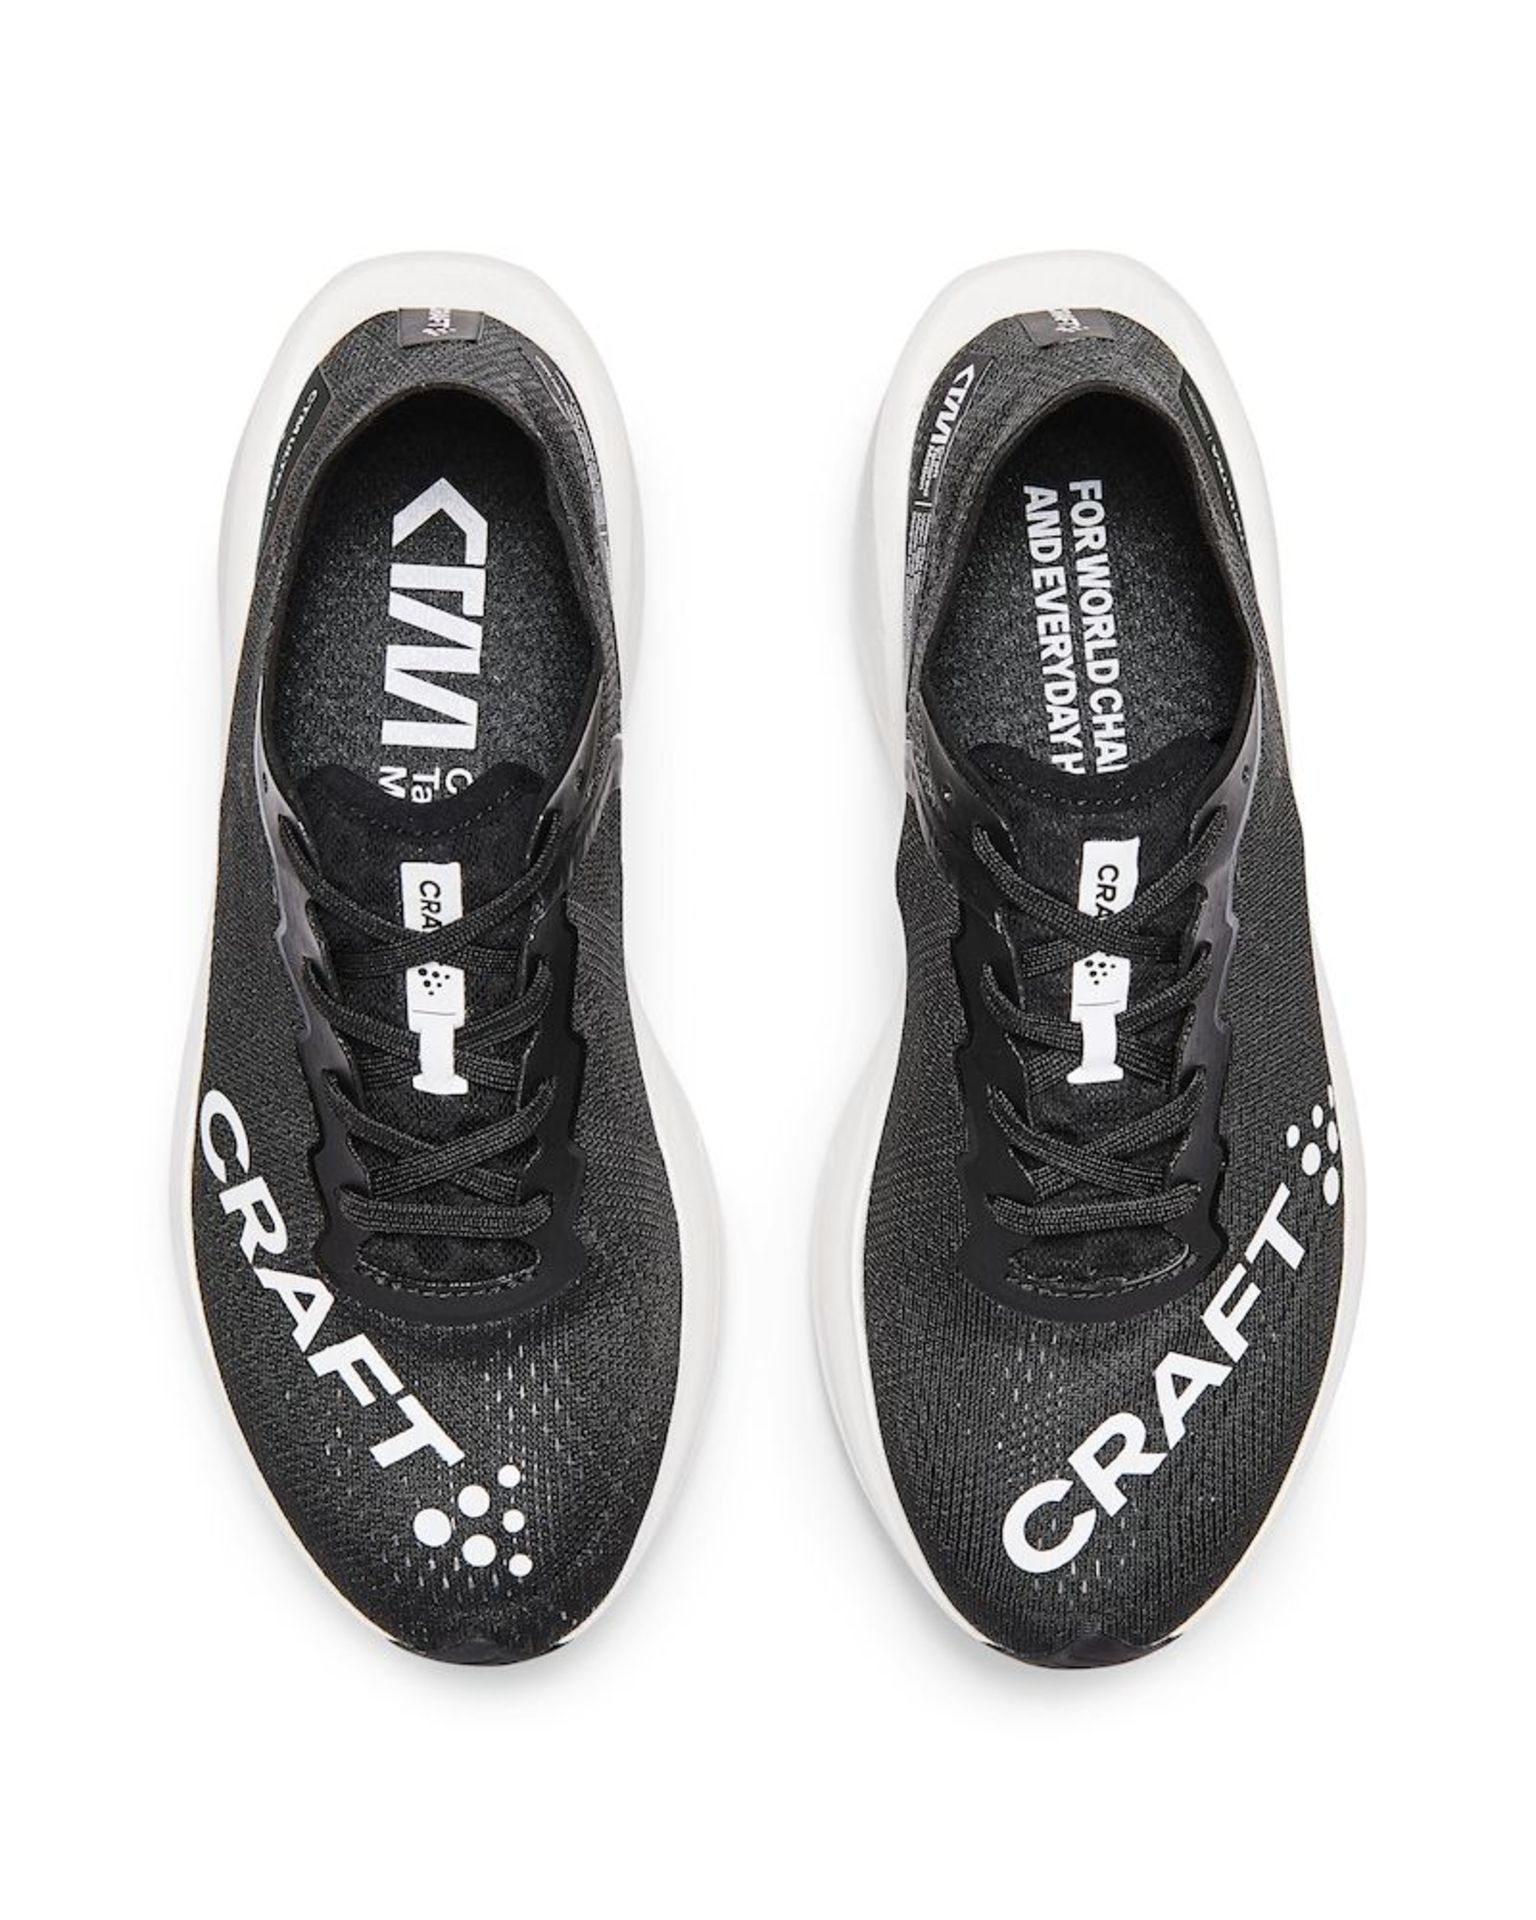 Craft CTM Ultra 2 Hardloopschoenen Zwart/Wit Dames